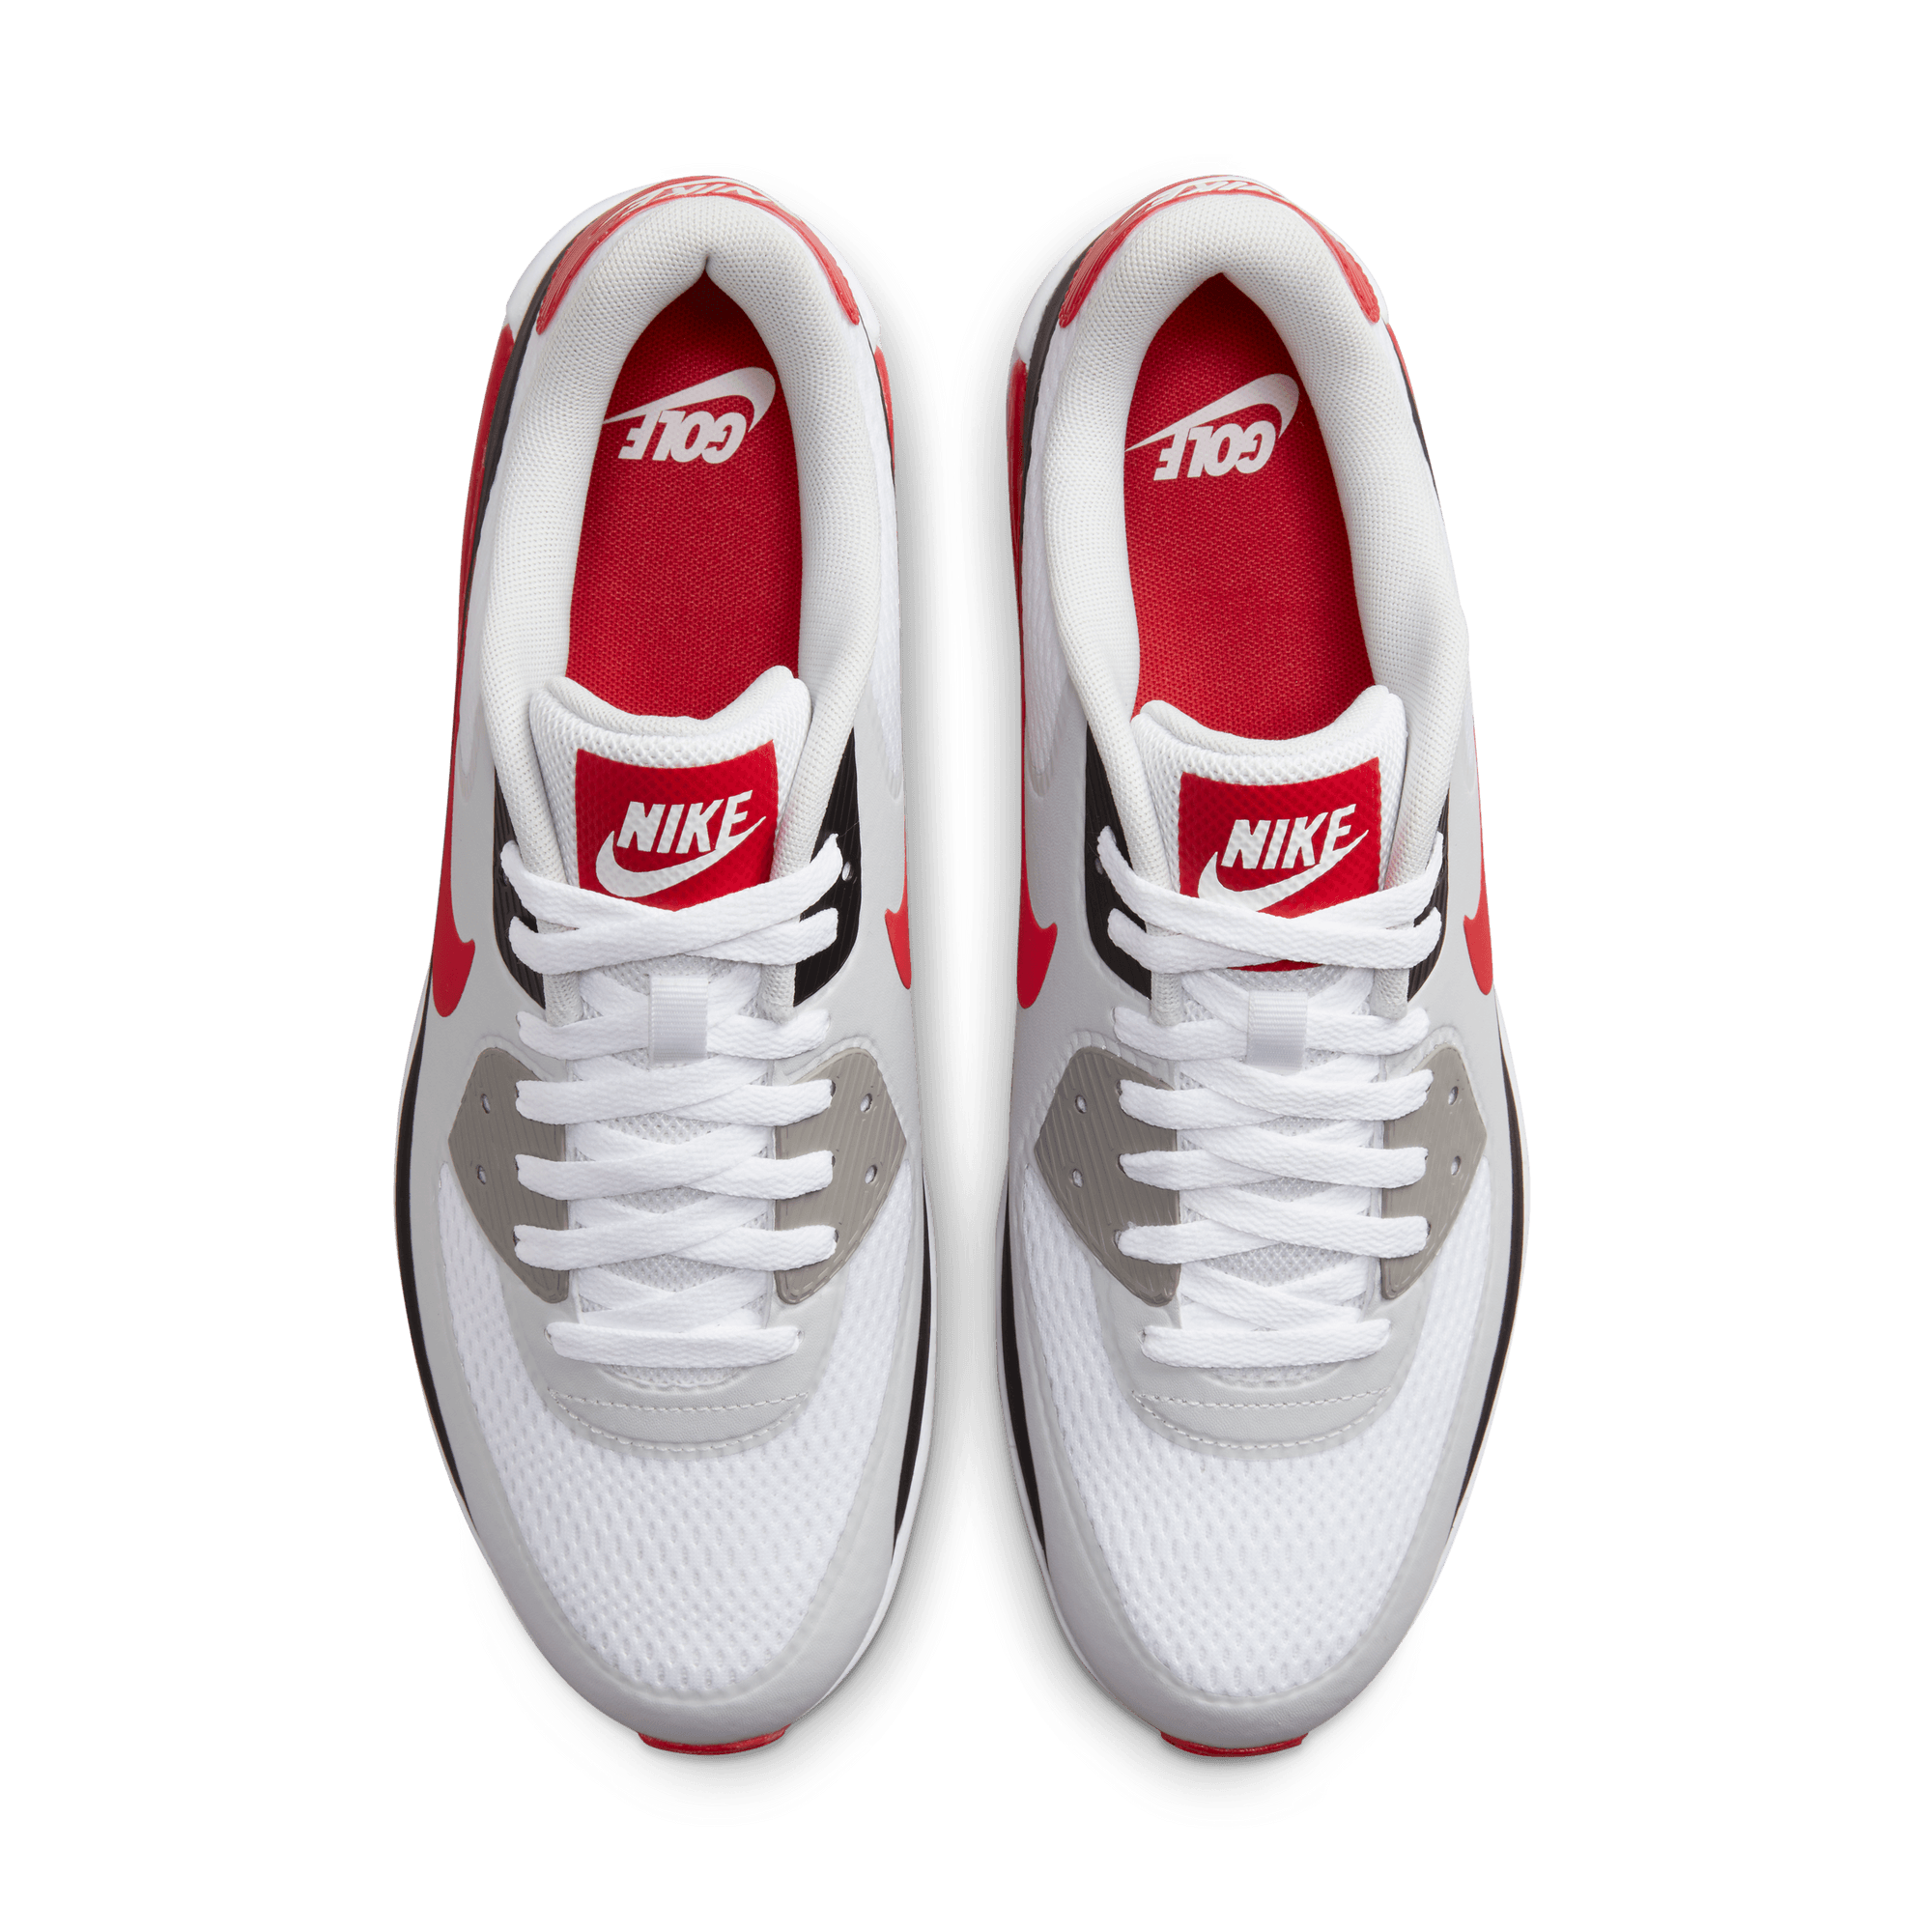 Nike Air Max 90 G